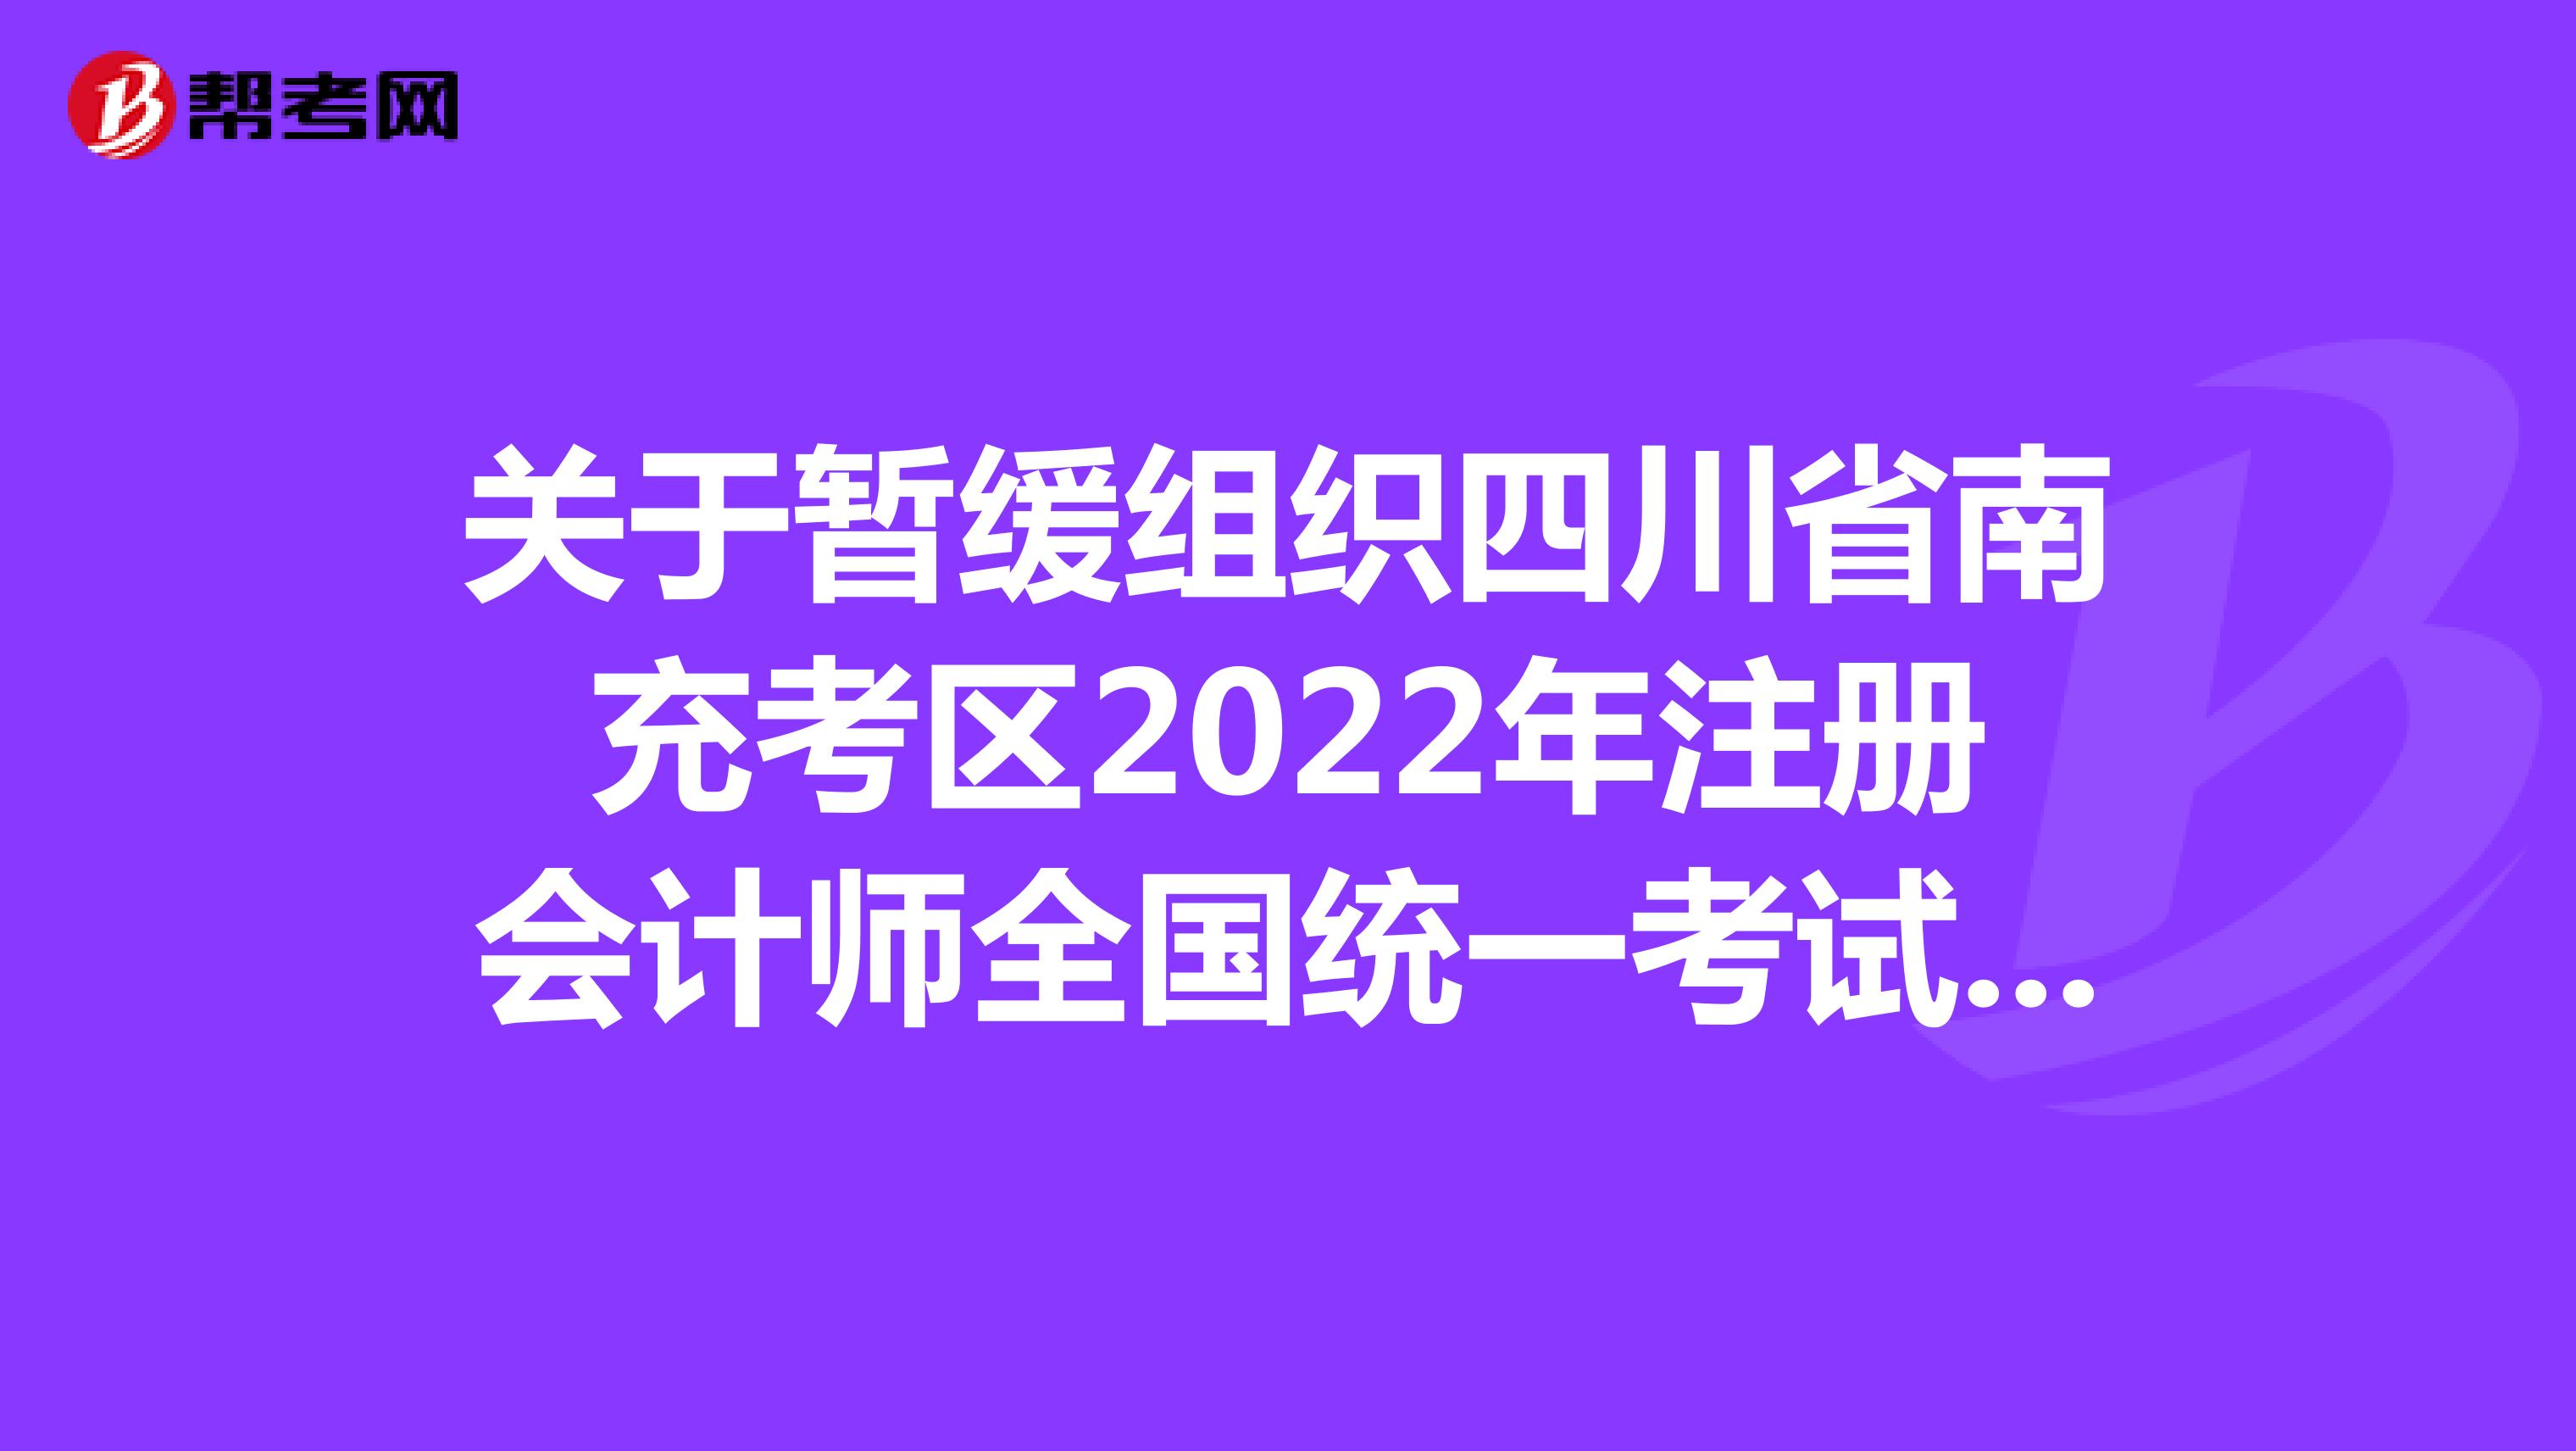 关于暂缓组织四川省南充考区2022年注册会计师全国统一考试的公告